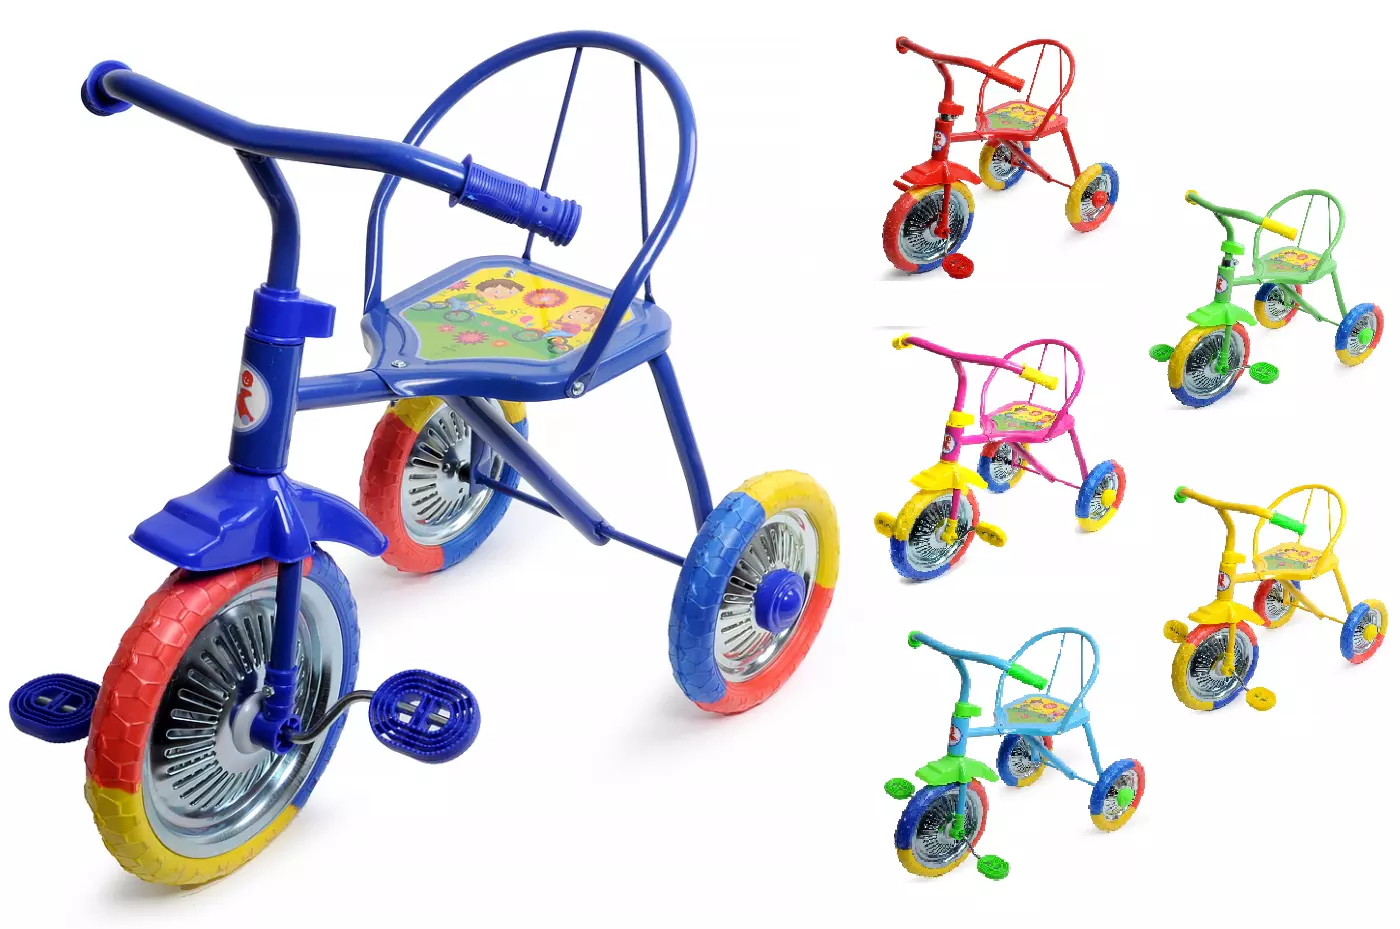 Какой велосипед купить ребенку в год. Велосипед трехколесный lh702. Велосипед 3-х озорной ветерок GV-b3-2mx цвета микс. Трехколесный велосипед PN-1010, Panterra, "гвоздик". Велосипед трёхколёсный детский lh702.